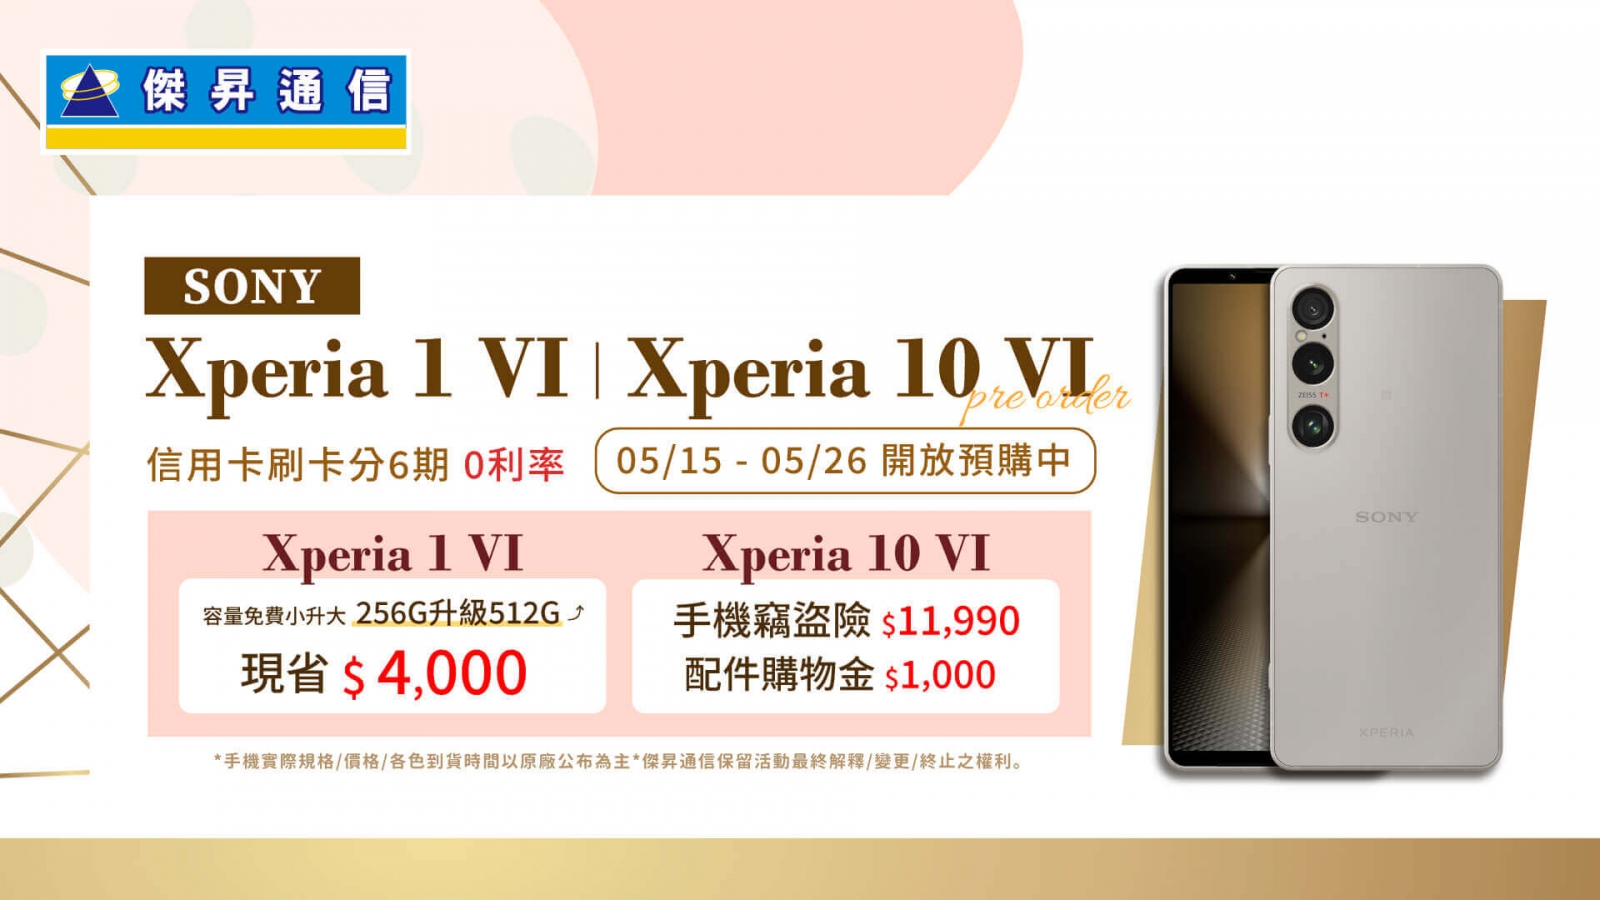 520前夕預購Sony Xperia 1 VI、Xperia 10 VI再送多項豪禮